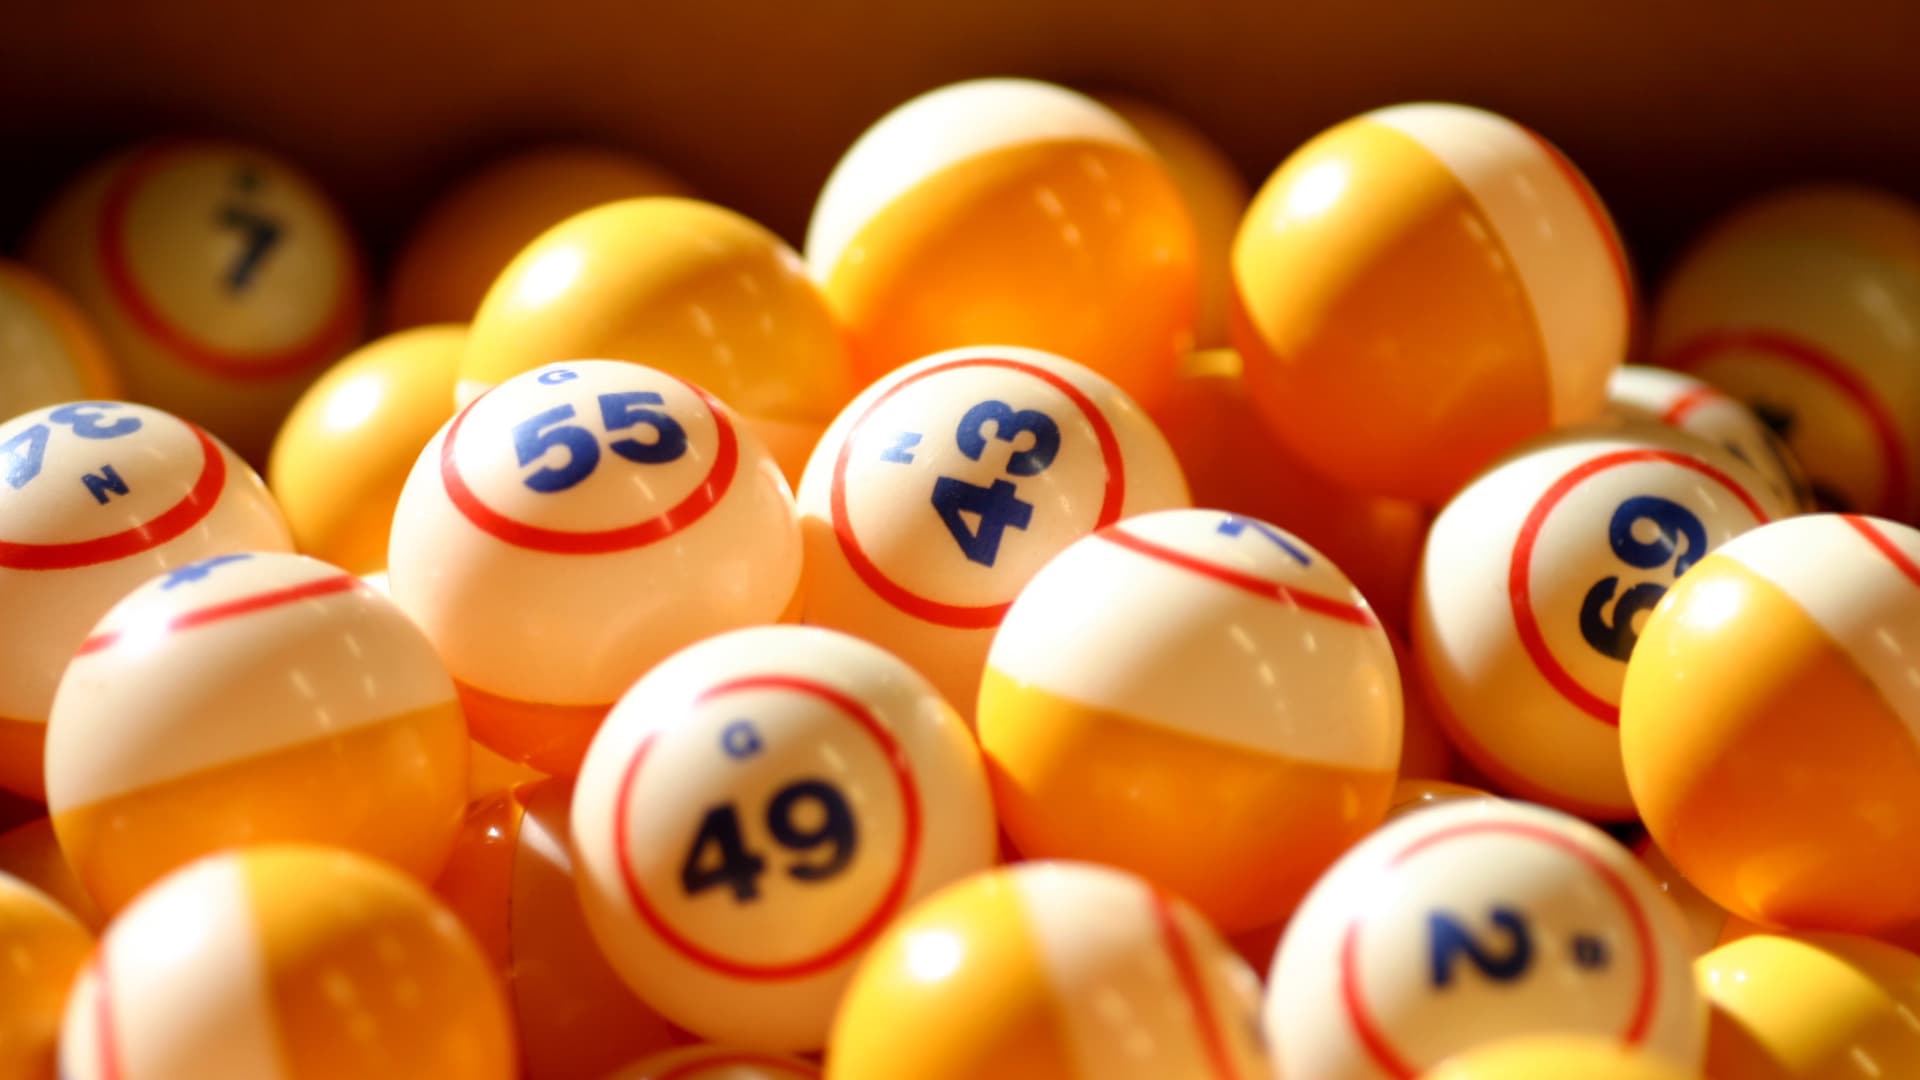 13-bingo-winning-patterns-ways-to-win-big-prizes